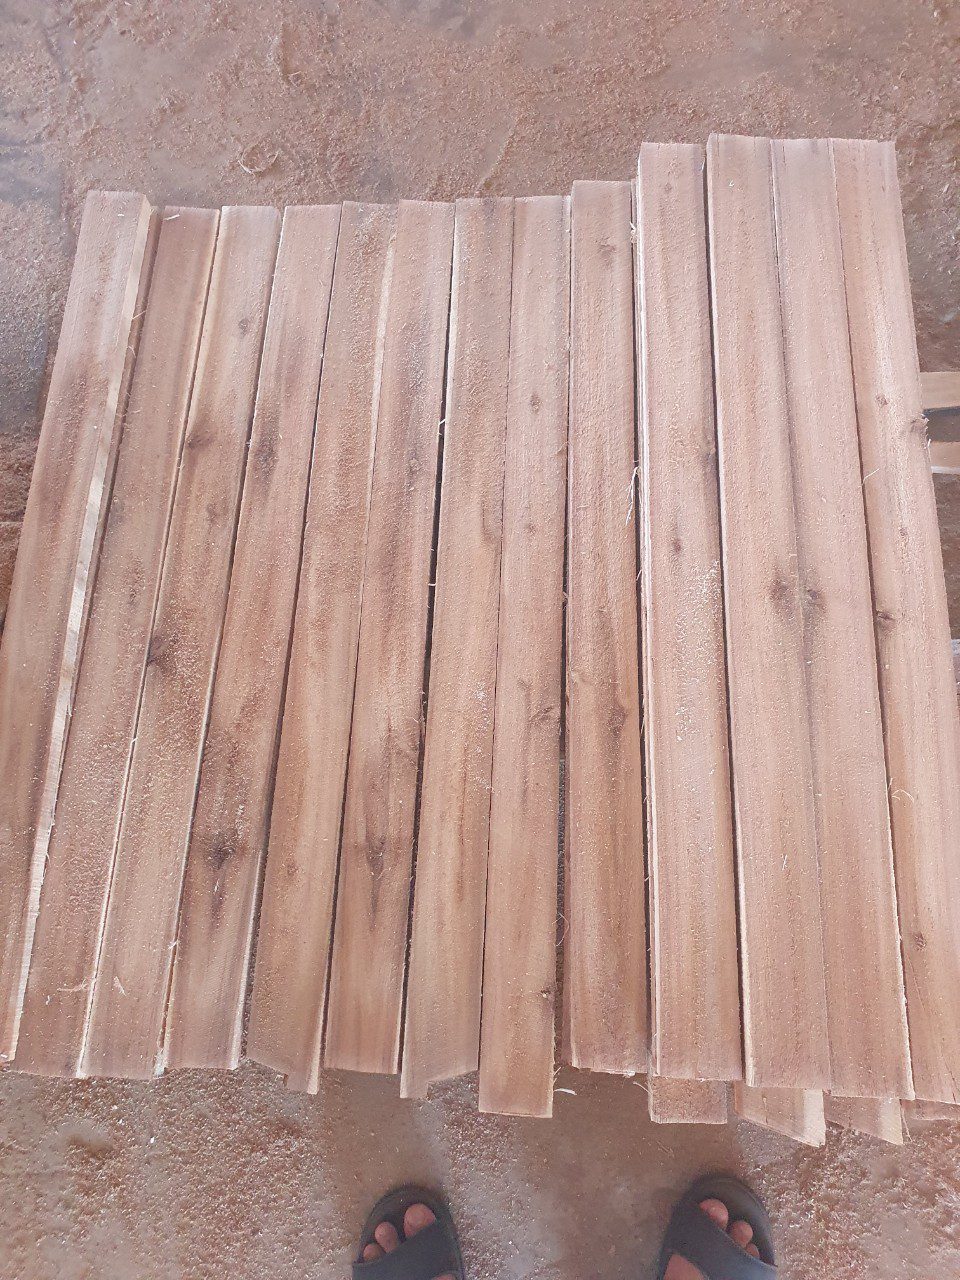 Đơn hàng xuất khẩu gỗ keo xẻ sang thị trường Panama GK01-310821